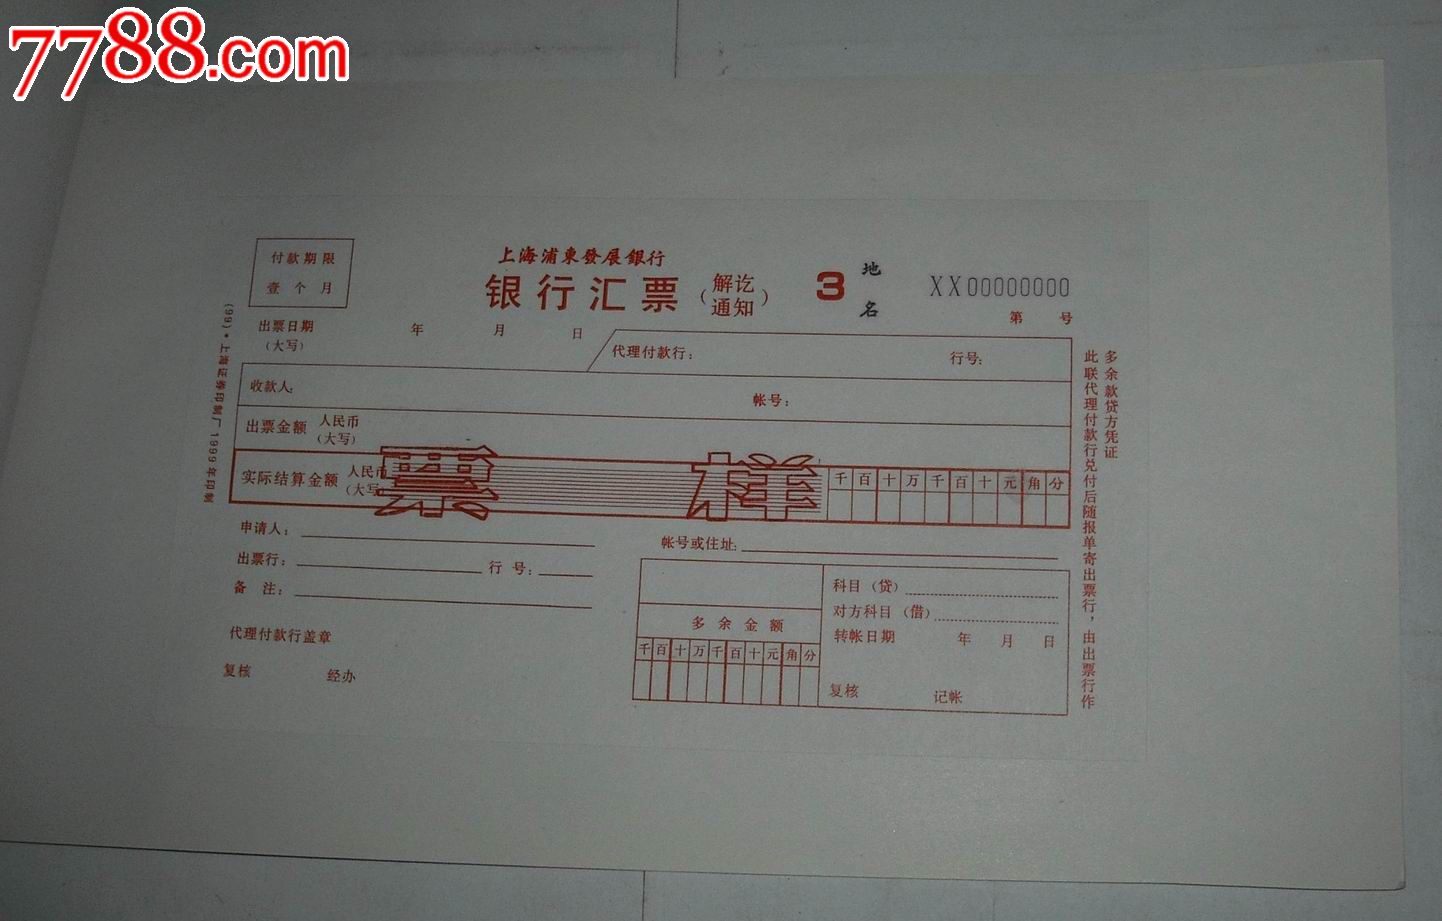 上海浦东发展银行汇票样本